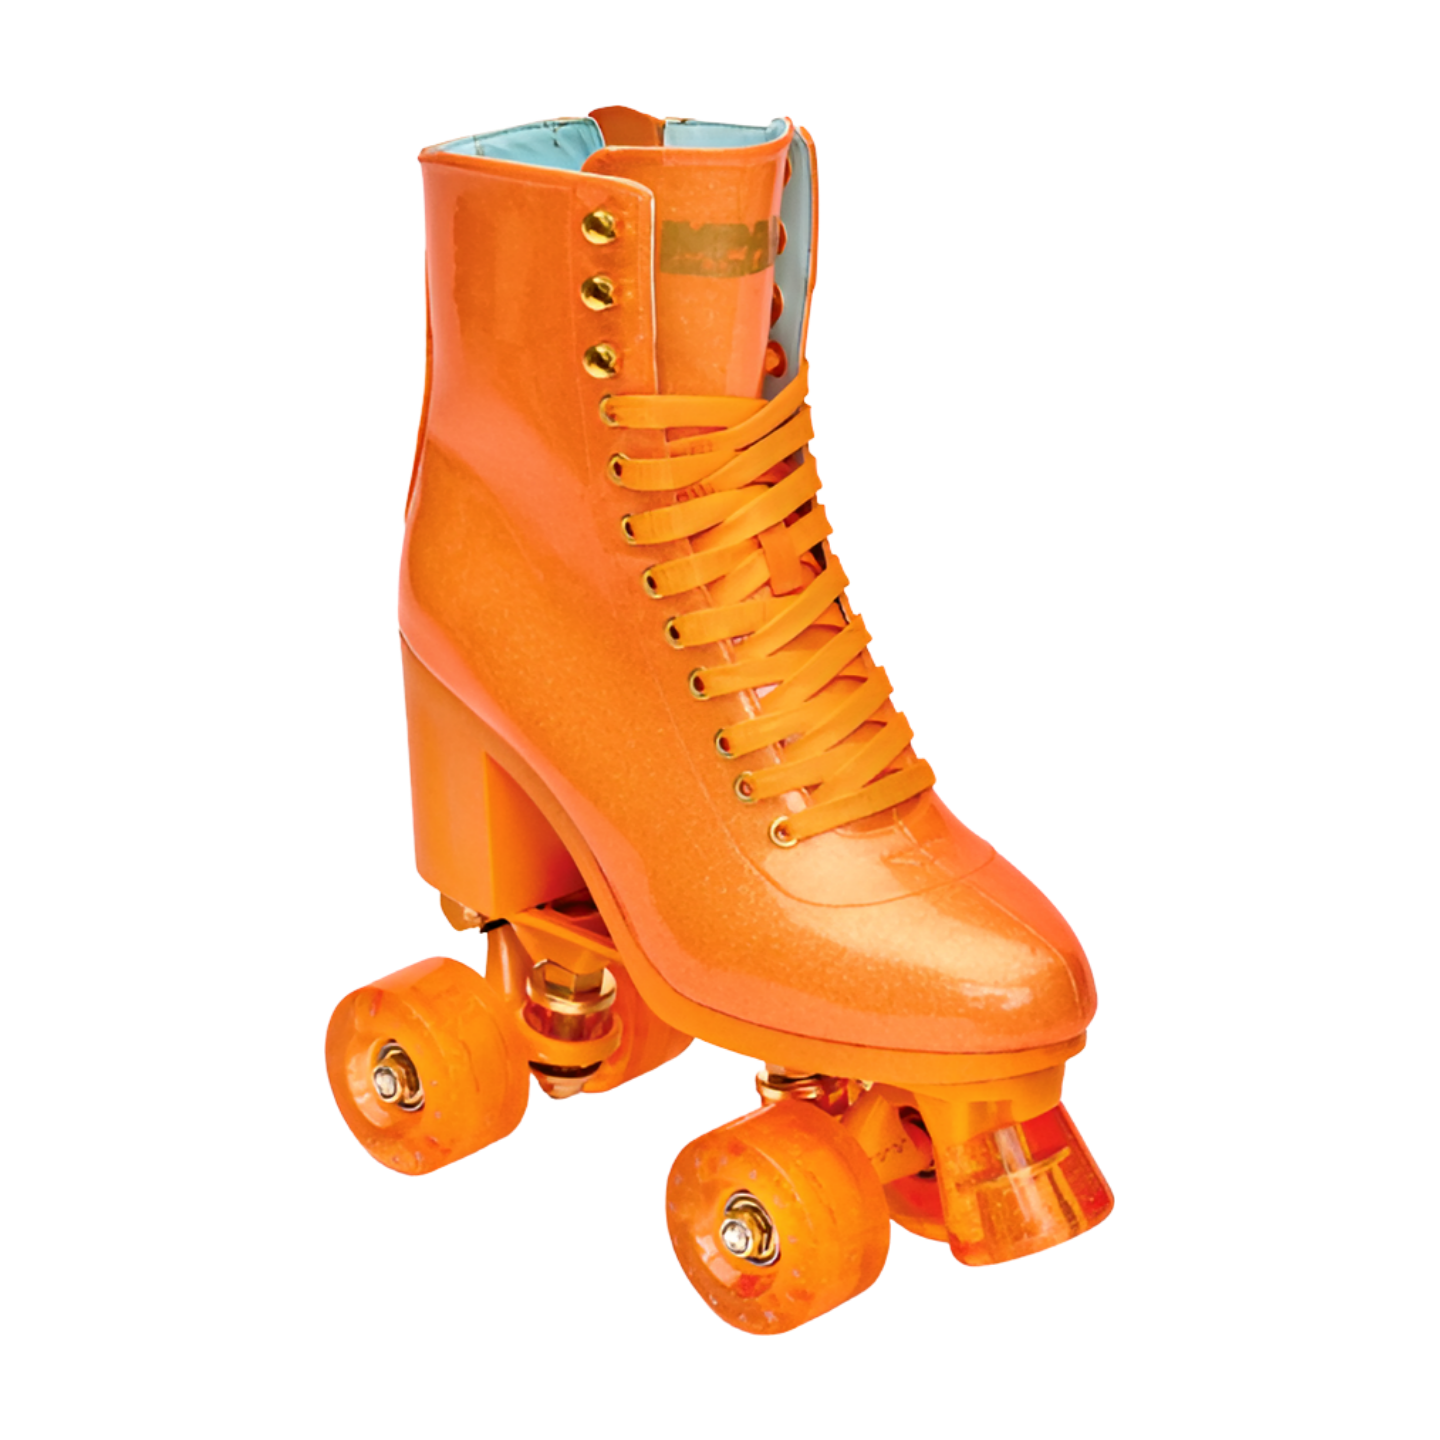 Impala Roller Skates High Heel Sparkle Orange - Ghost Boards